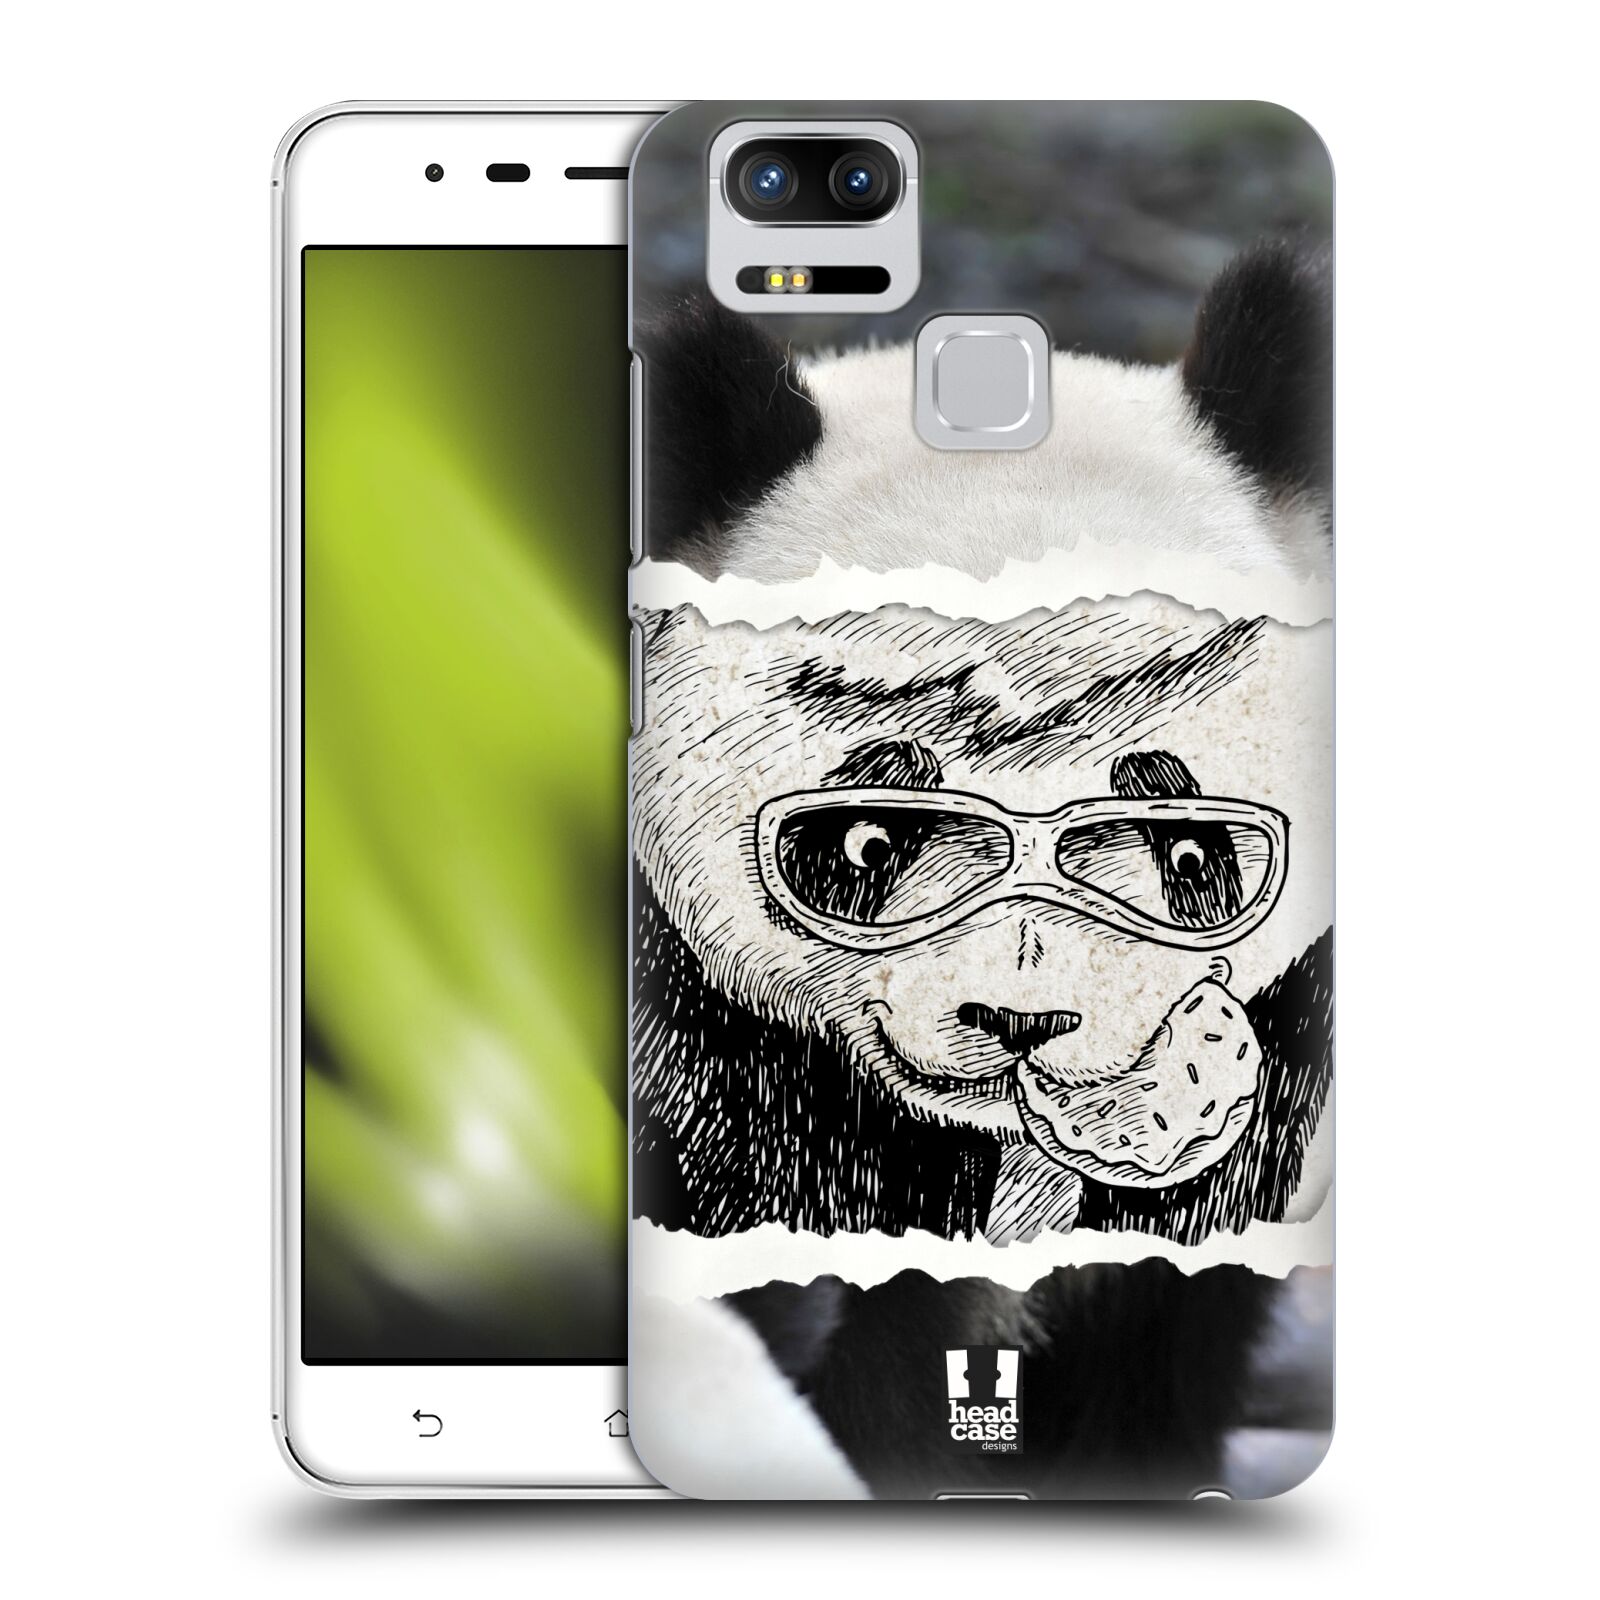 HEAD CASE plastový obal na mobil Asus Zenfone 3 Zoom ZE553KL vzor zvířata koláž roztomilá panda